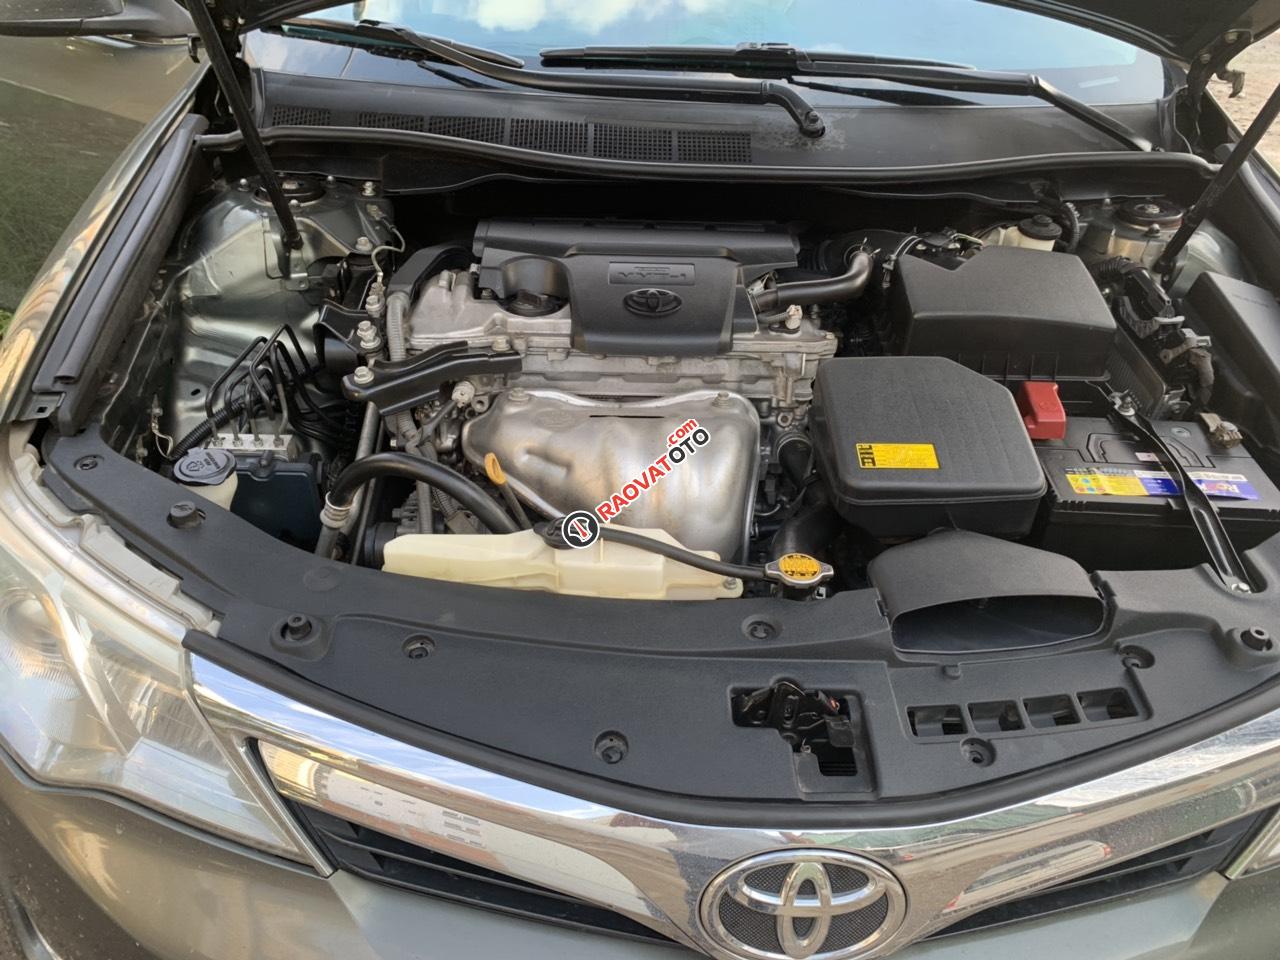 Cần bán xe Toyota Camry XLE đời 2014, màu xám (ghi), nhập khẩu, giá 380tr-6